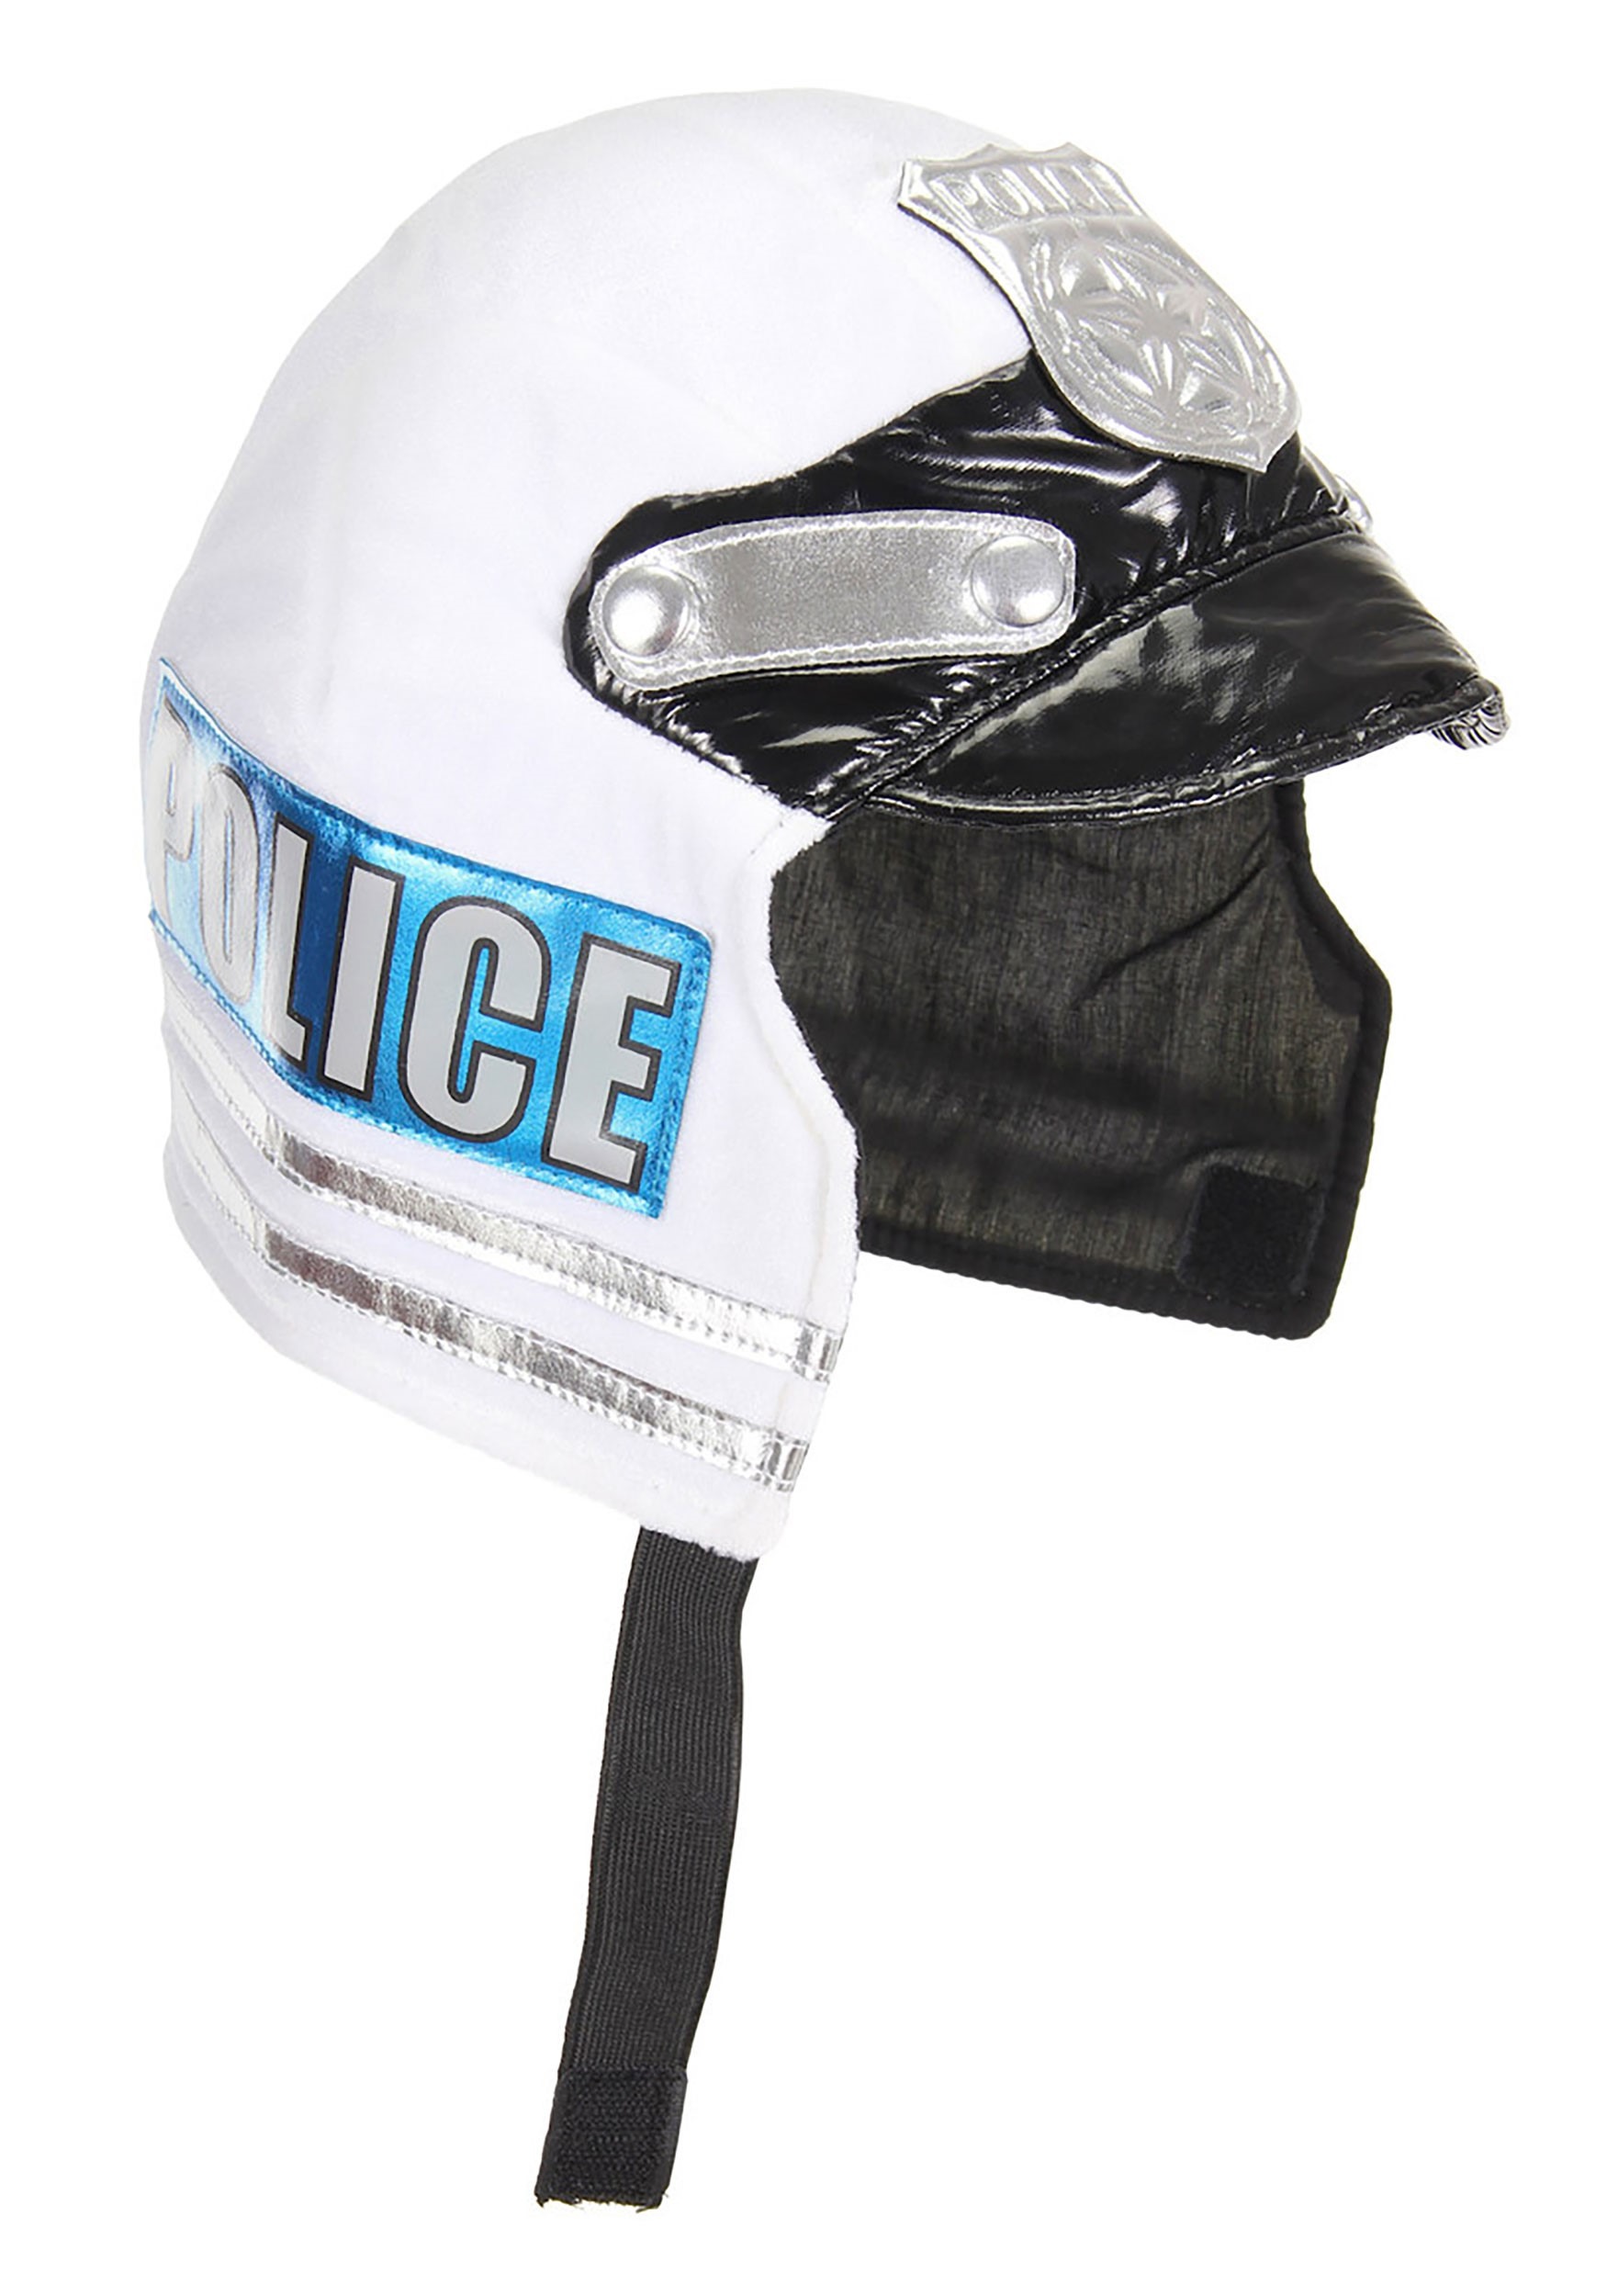 Police Soft Helmet For Kids